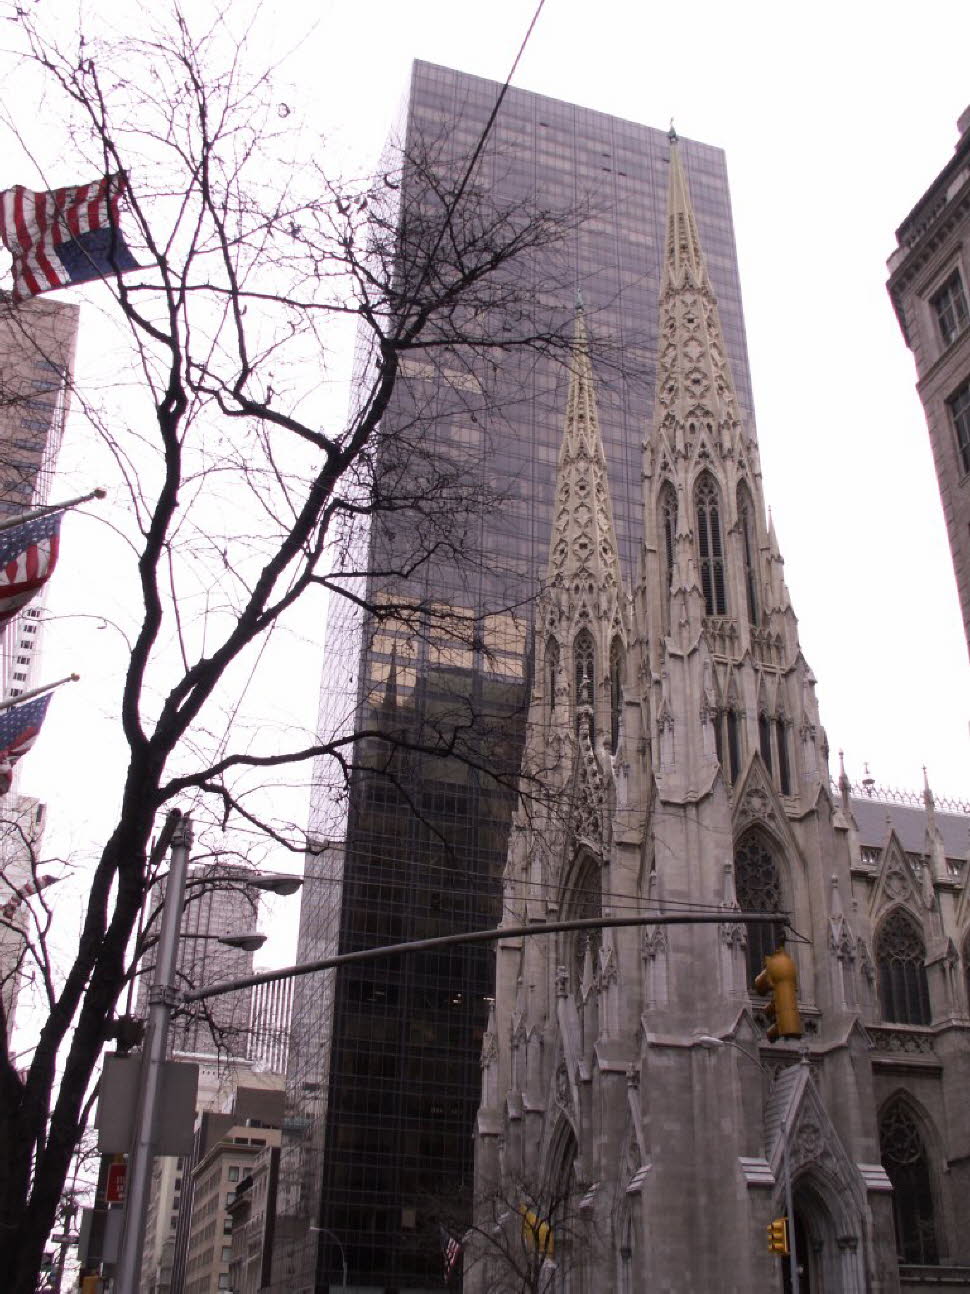 Die größte im neugotischen Stil erbaute Kathedrale in den Vereinigten Staaten ist die St. Patrick’s Cathedral. Sie befindet sich an der Fifth Avenue in Manhattan, zwischen der 50. und der 51. Straße, direkt gegenüber dem Rockefeller Center. Die Kathedraleô